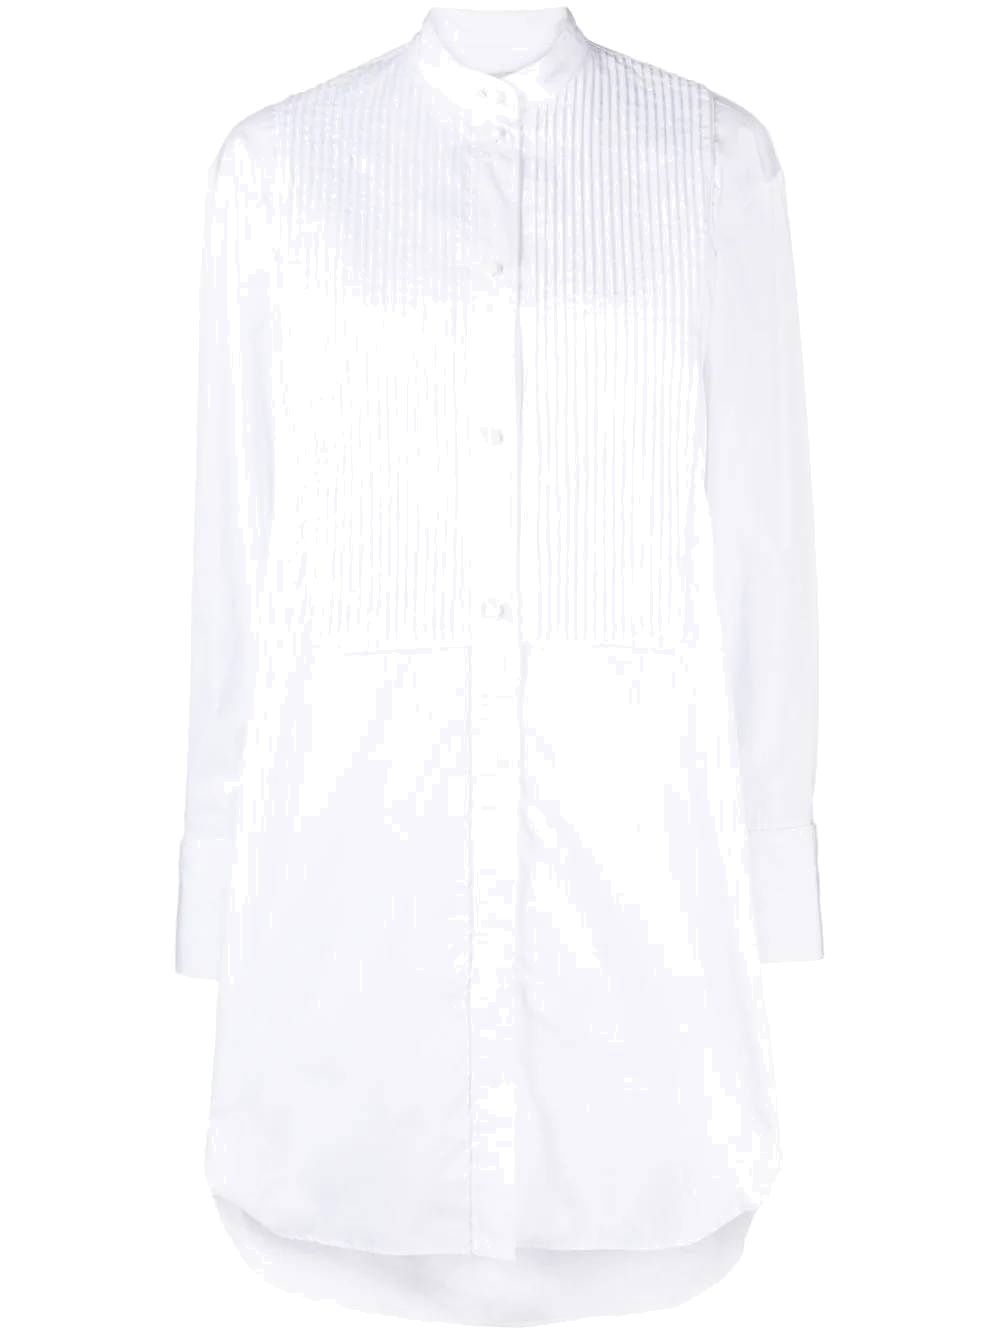 White cotton poplin dress